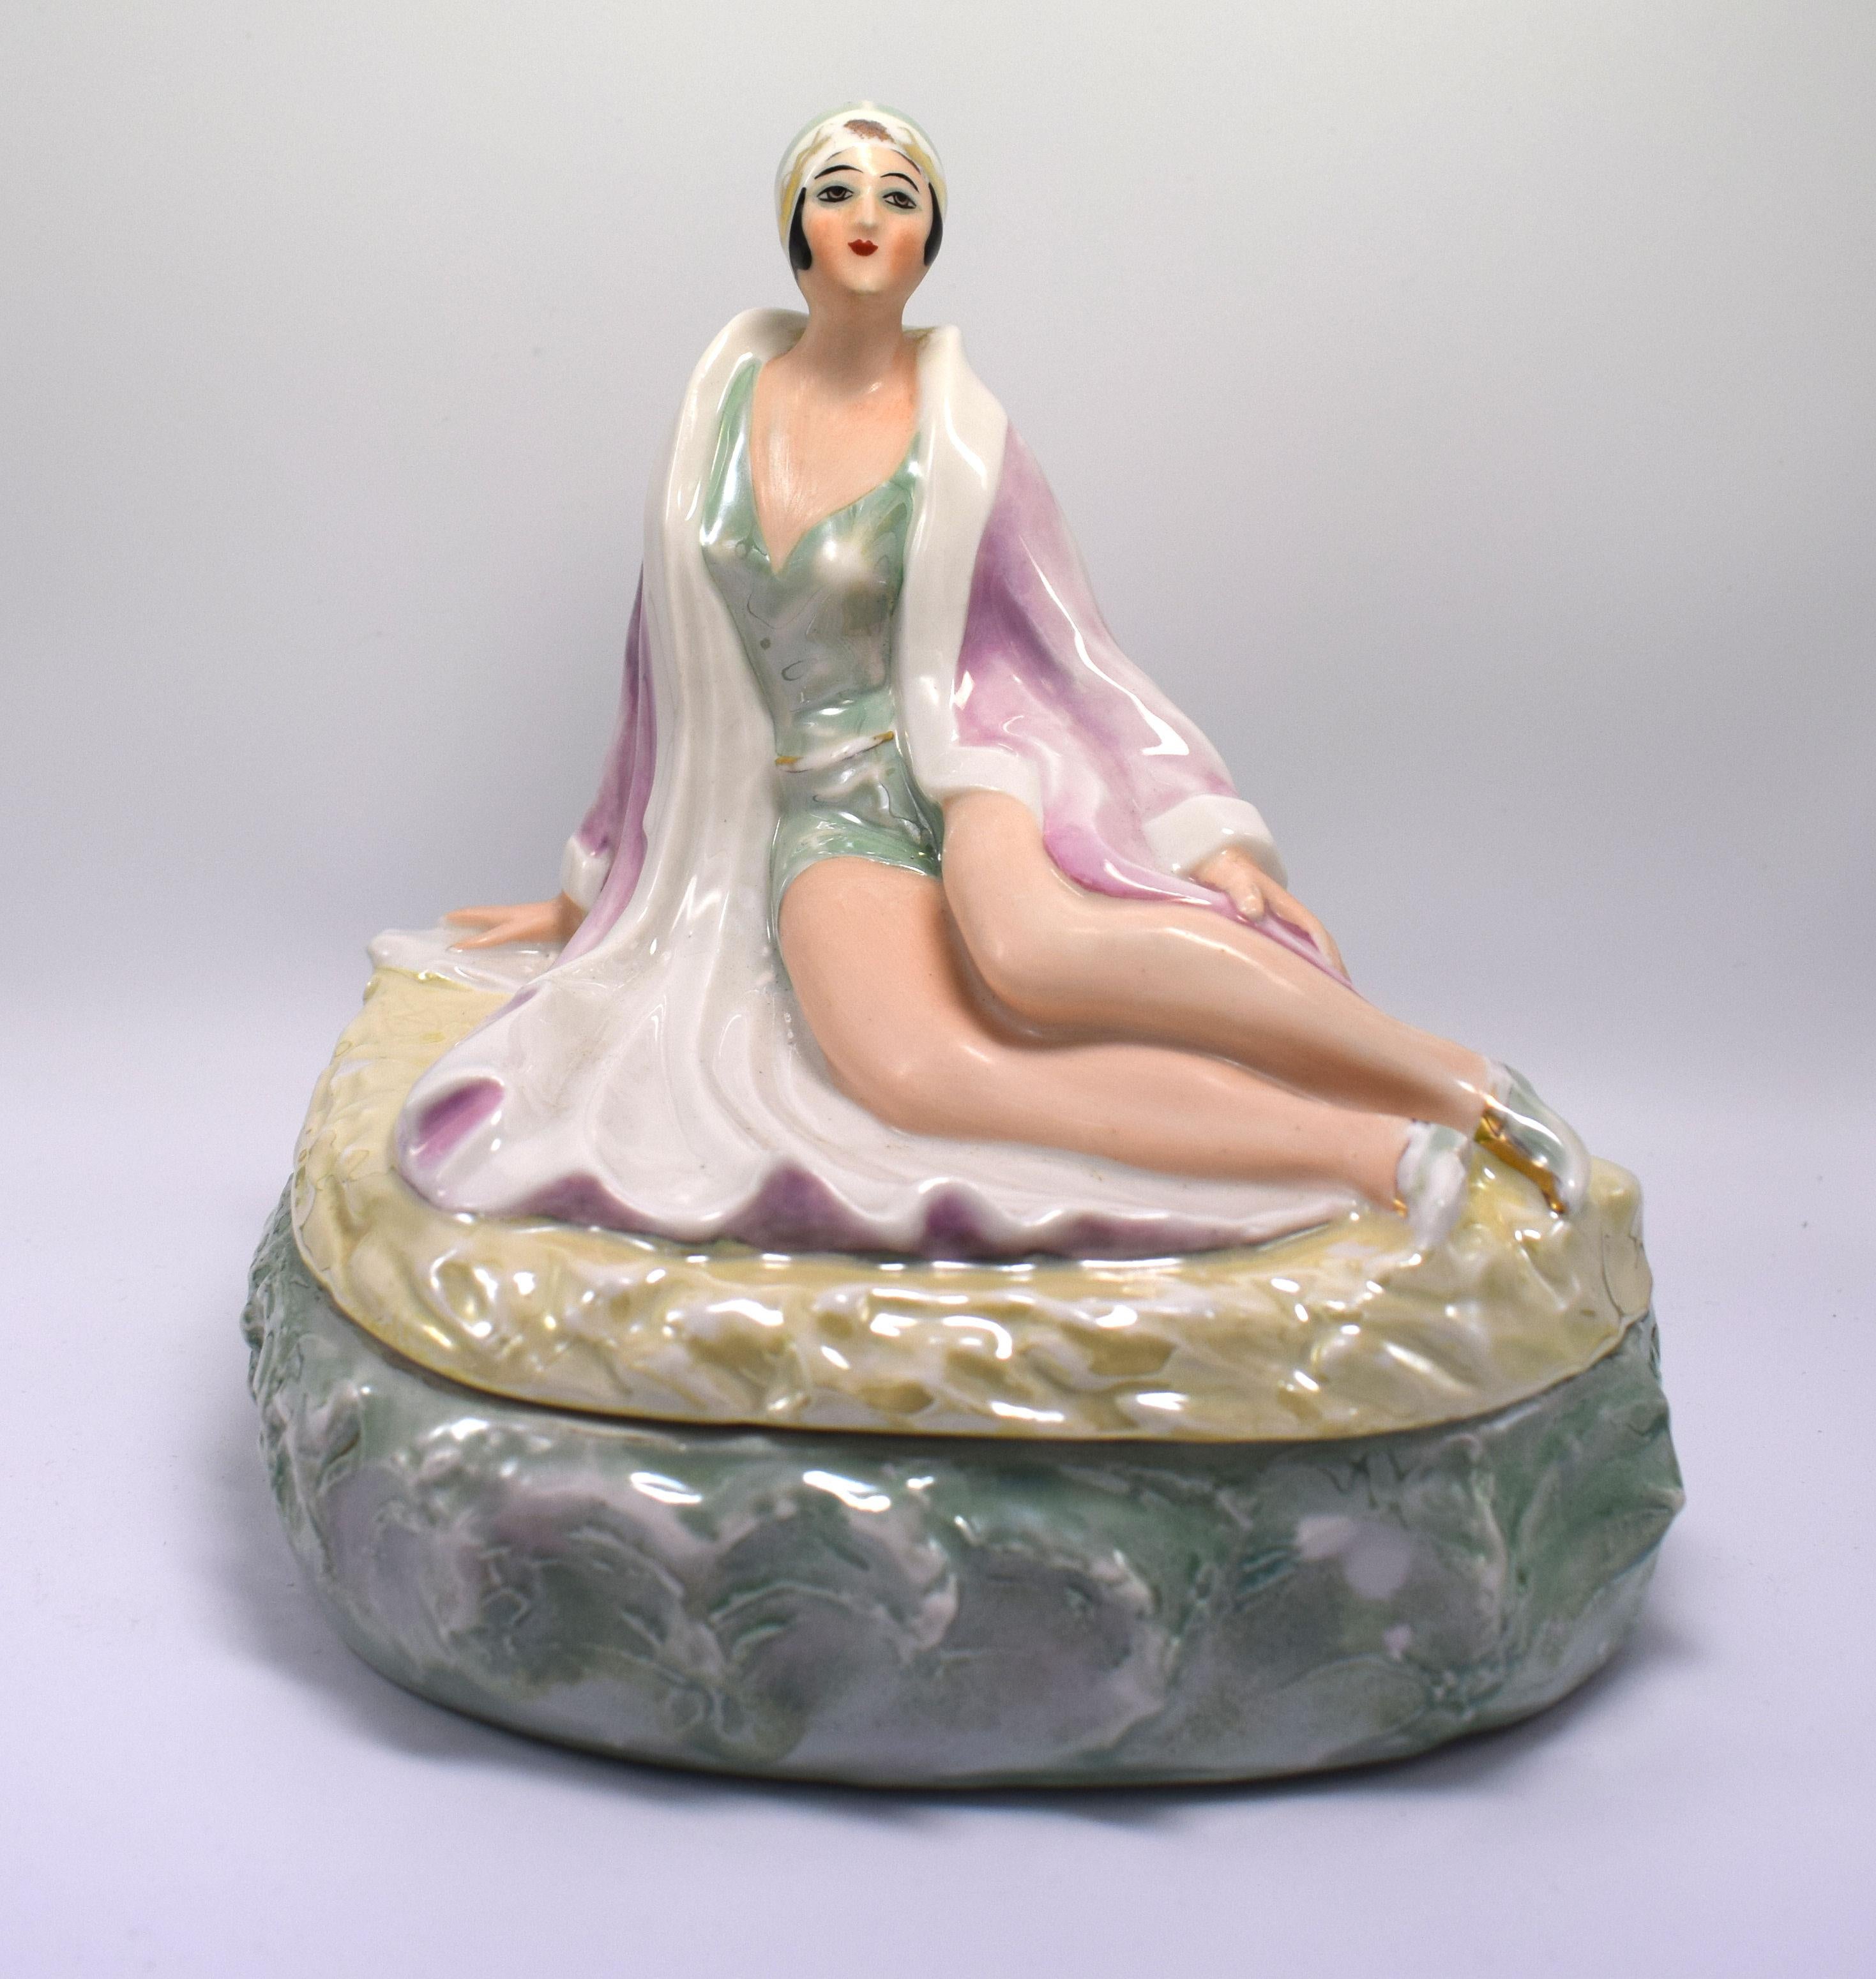 Fantastique boîte originale en porcelaine Art Déco représentant une belle baigneuse flapper girl. Réalisée en porcelaine et finie avec des émaux lustrés, elle a un visage exquis et est modelée comme si elle était allongée sur une plage (le